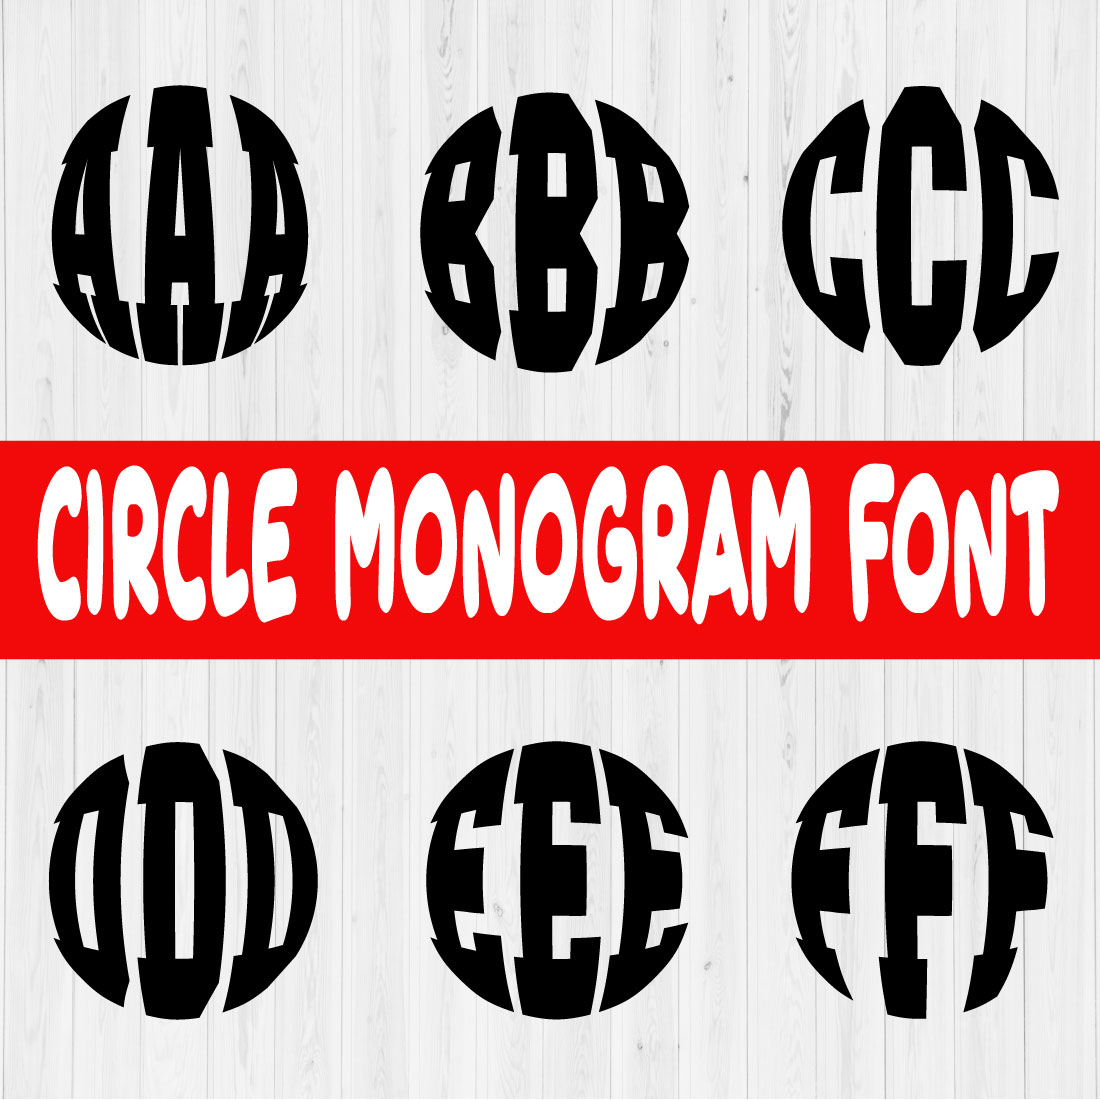 Circle Monogram Font Vol1 preview image.